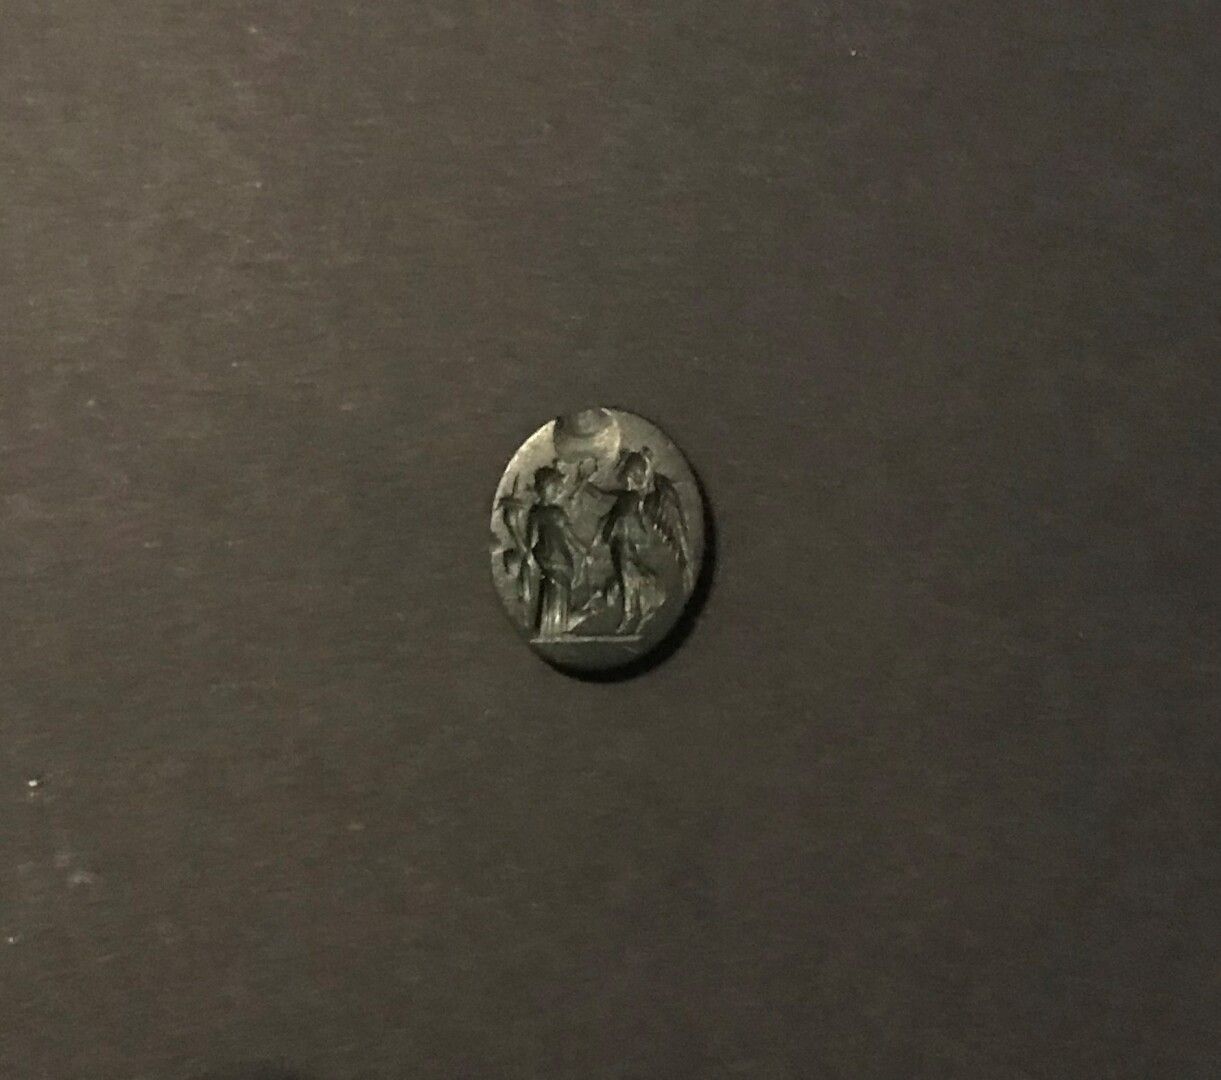 Null 椭圆形和平凹版刻有胜利者加冕Tyche的图案。黑碧玉。罗马艺术，
1-2世纪。
1.5 x 1 cm
色泽。